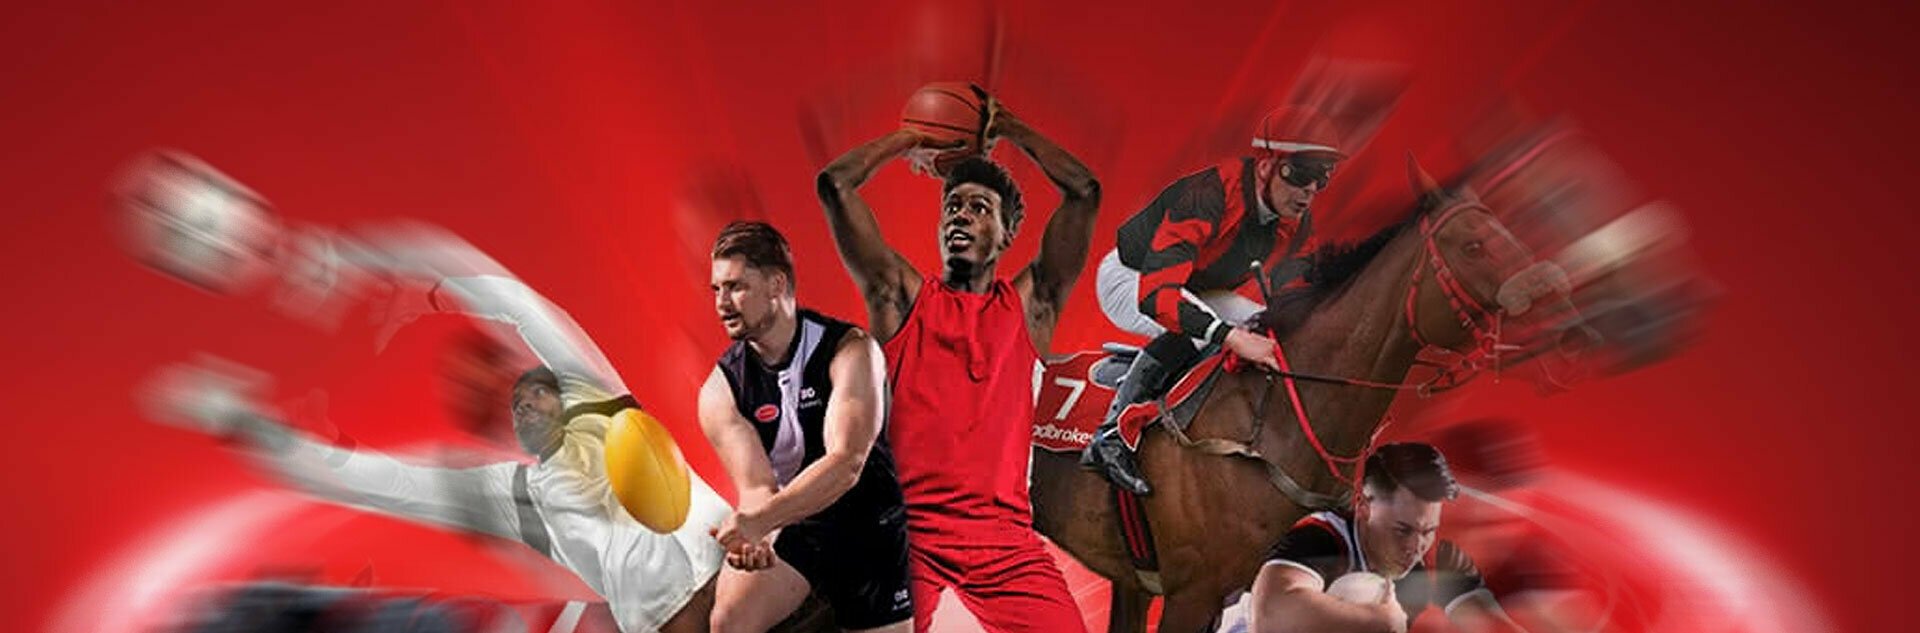 Introducing Ladbrokes sportsbook 